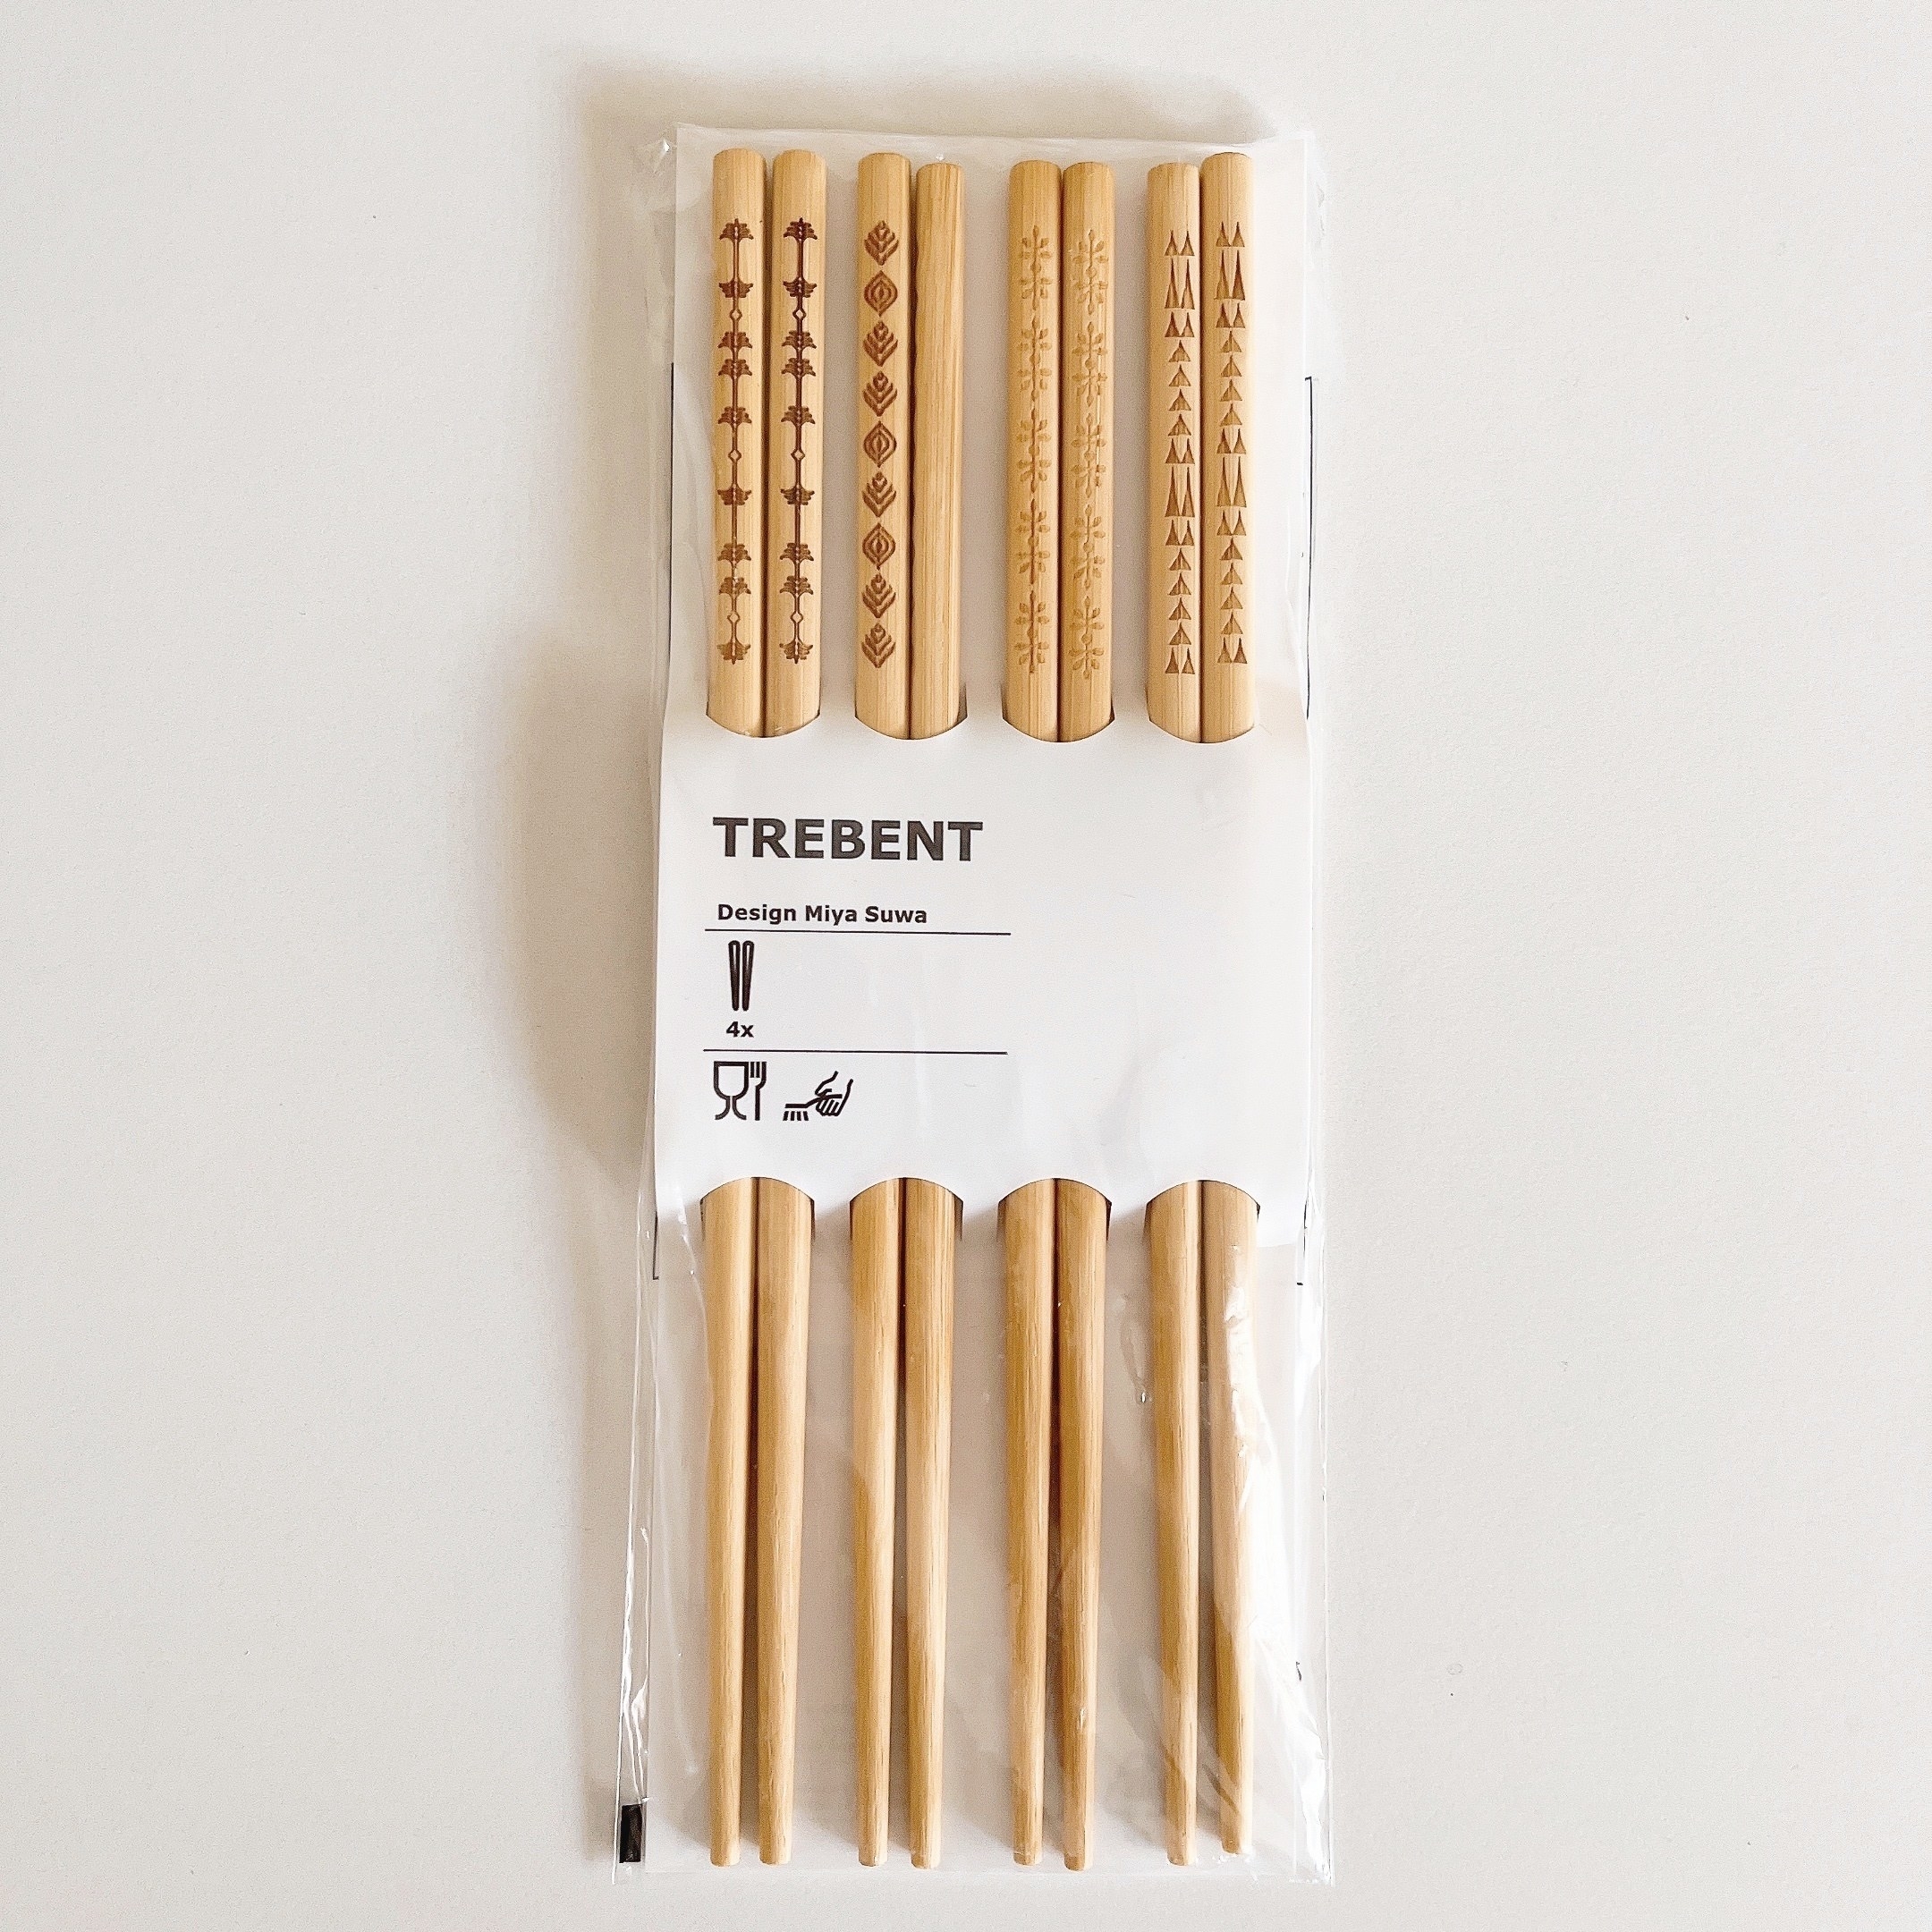 IKEA（イケア）のおすすめ雑貨「TREBENT トレベント 箸」